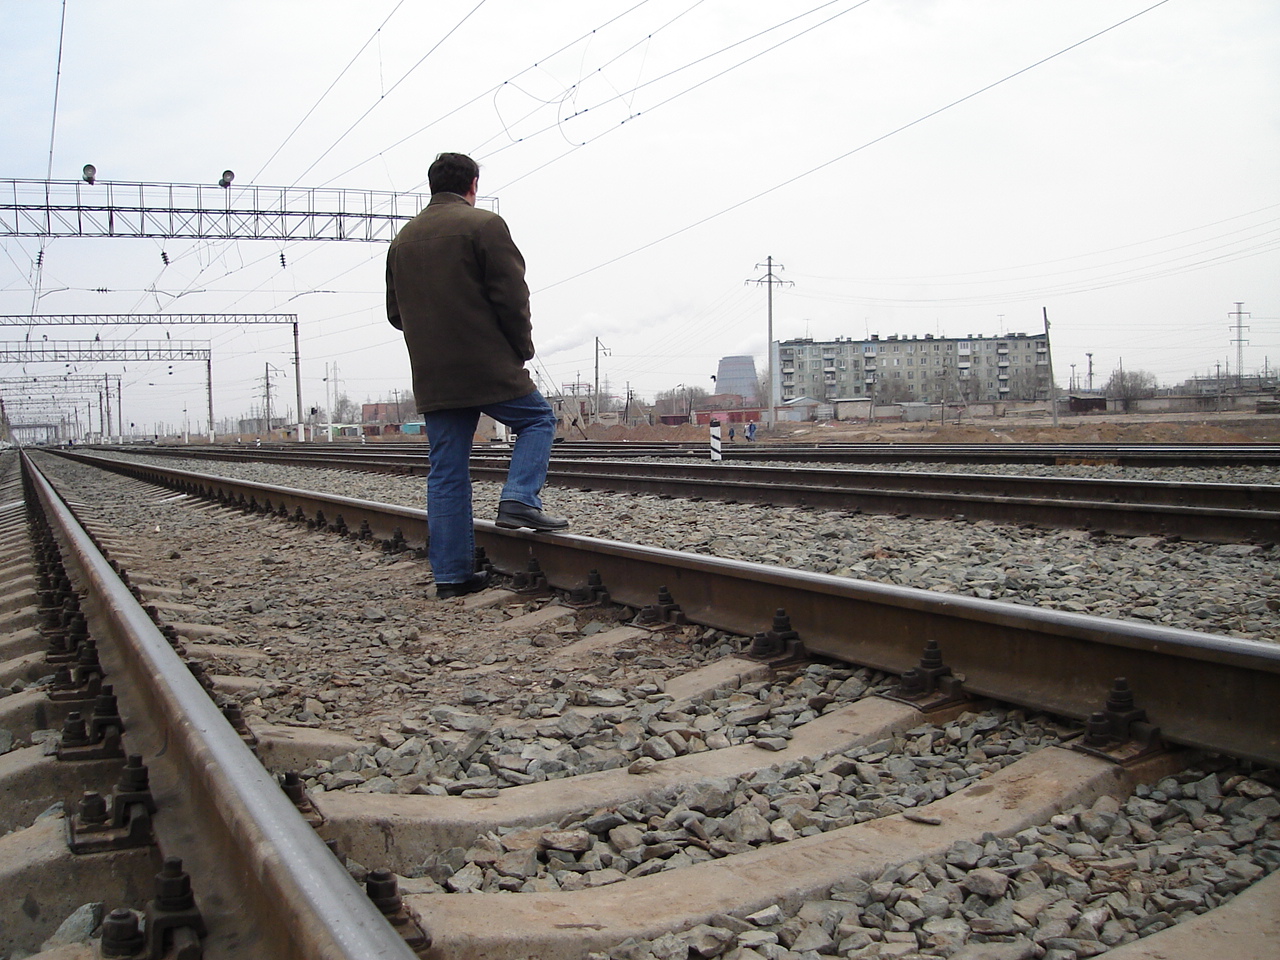 В 2020 году снизился уровень травматизма на Приволжской железной дороге